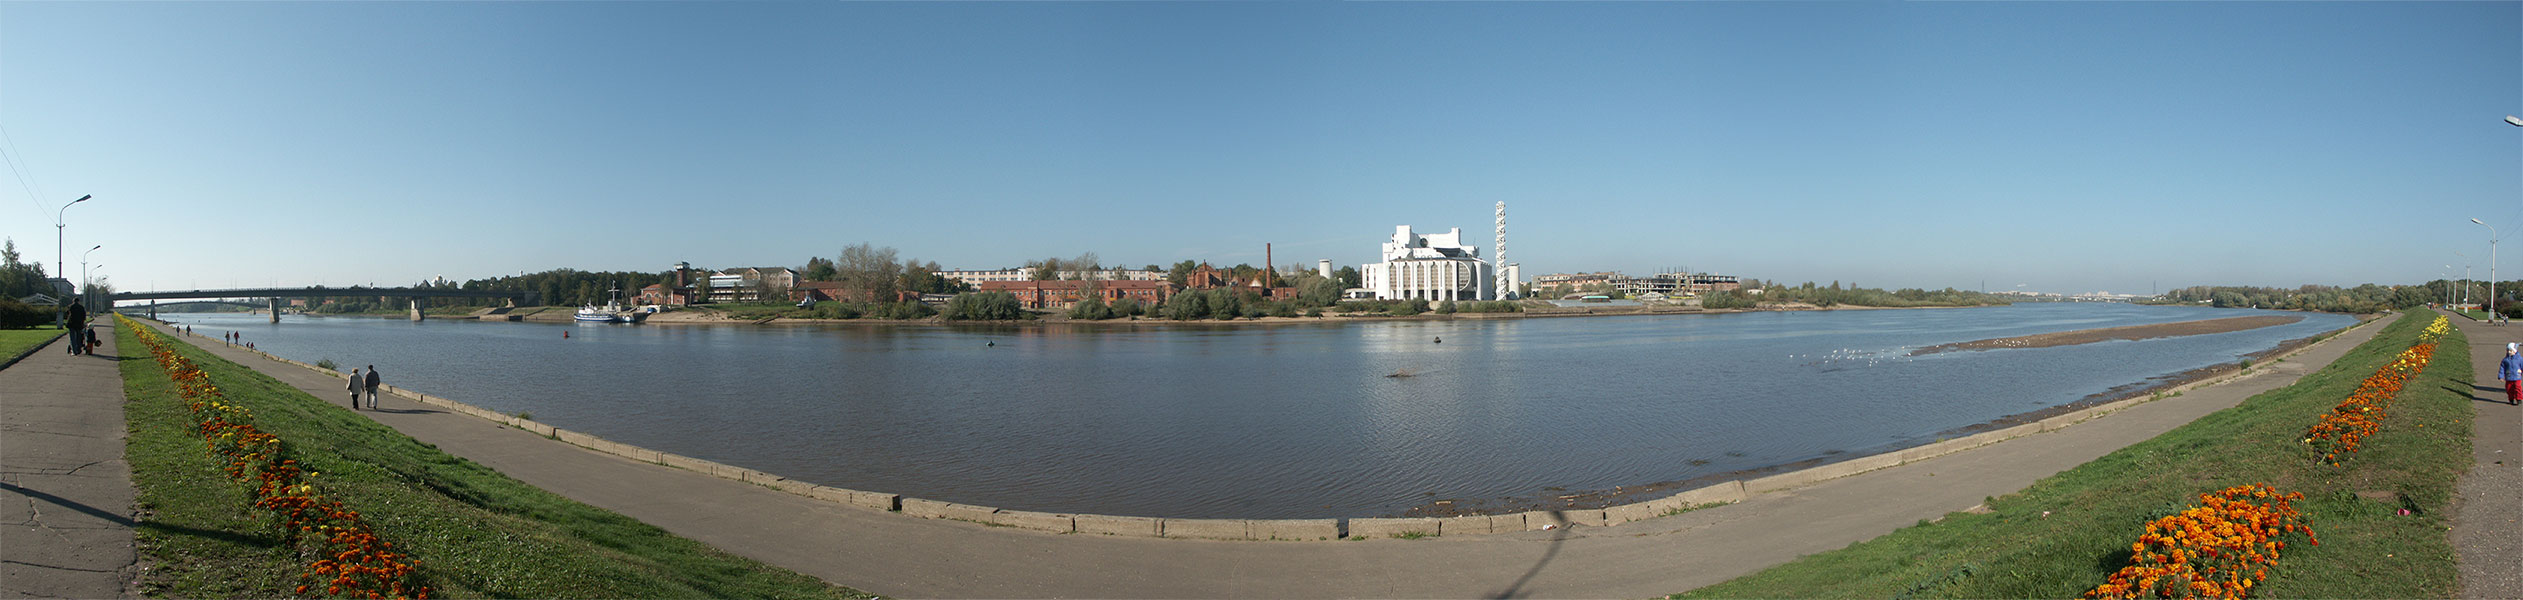 Великий Новгород: река Волхов, Софийская и Торговая стороны; 12:17 25.09.2005